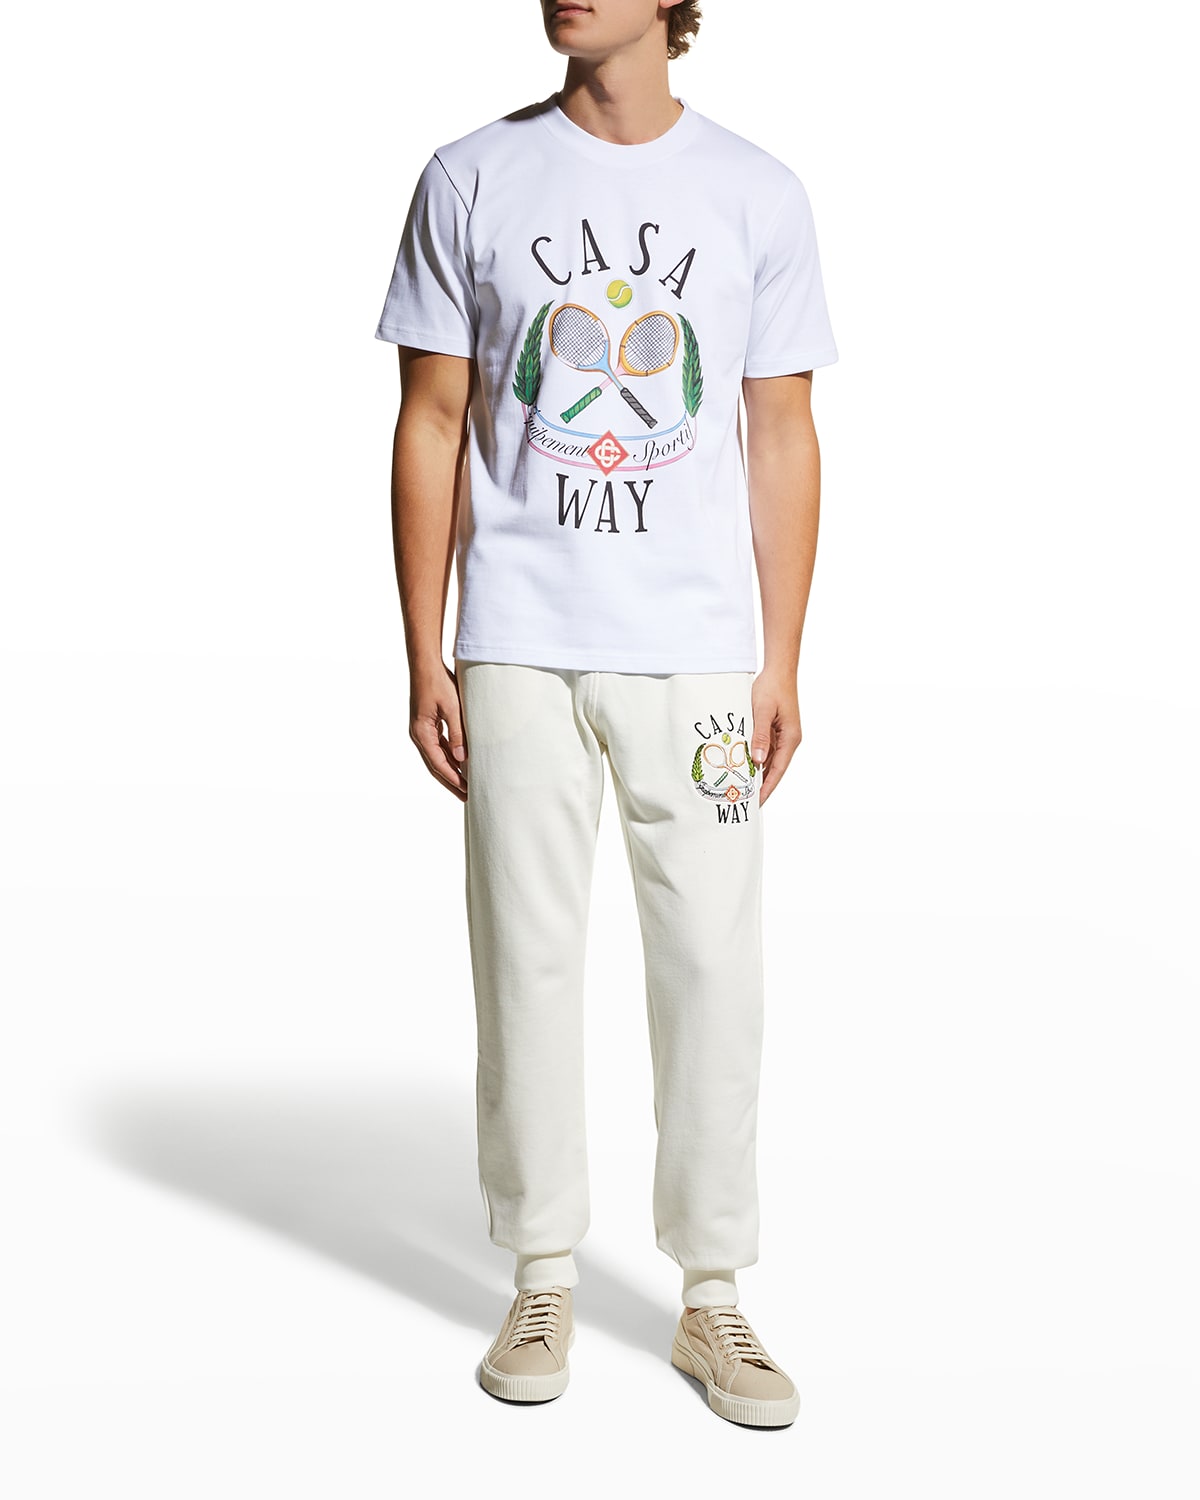 Men's Casaway Tennis T-Shirt